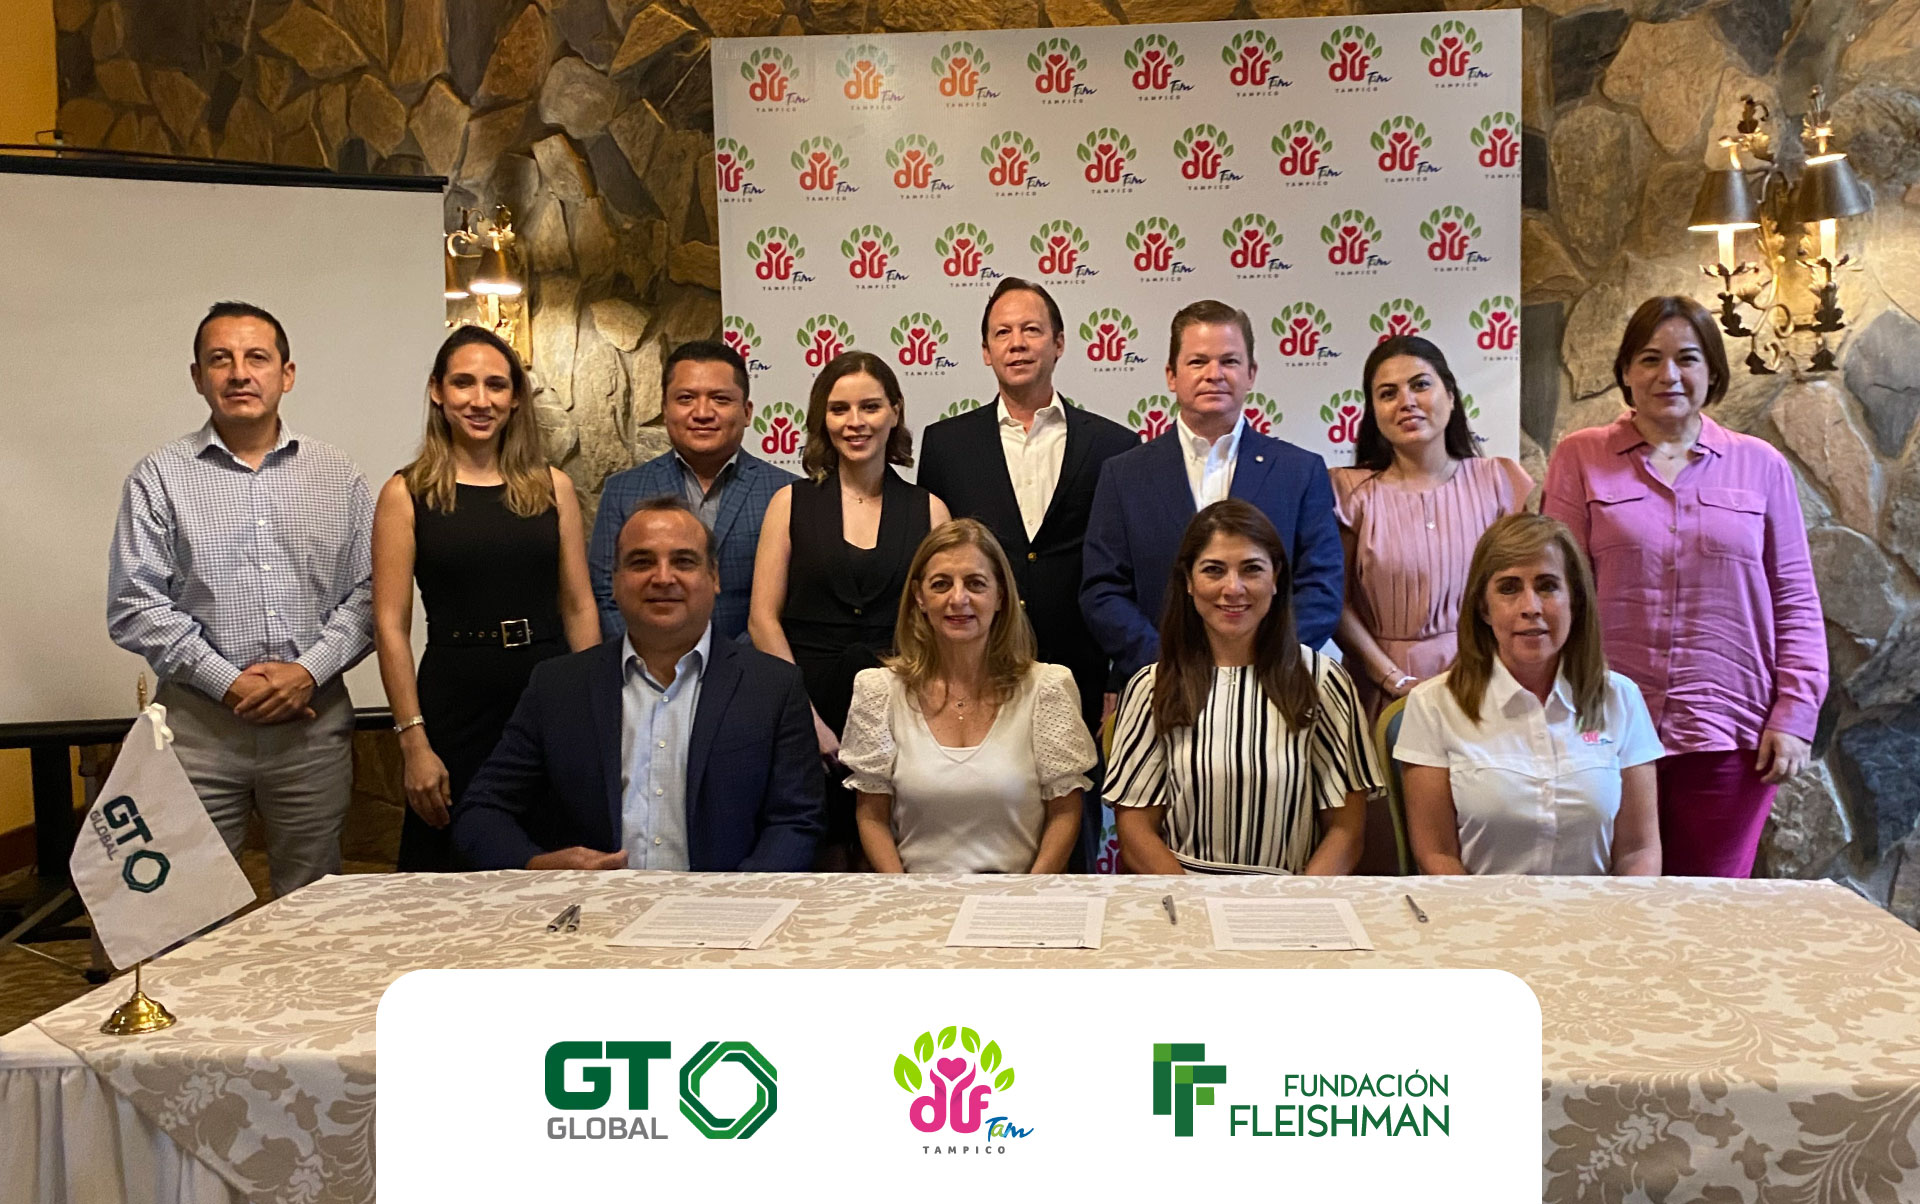 Fundación Fleishman y GT GLOBAL entregan donativo al DIF Tampico en beneficio de la infancia